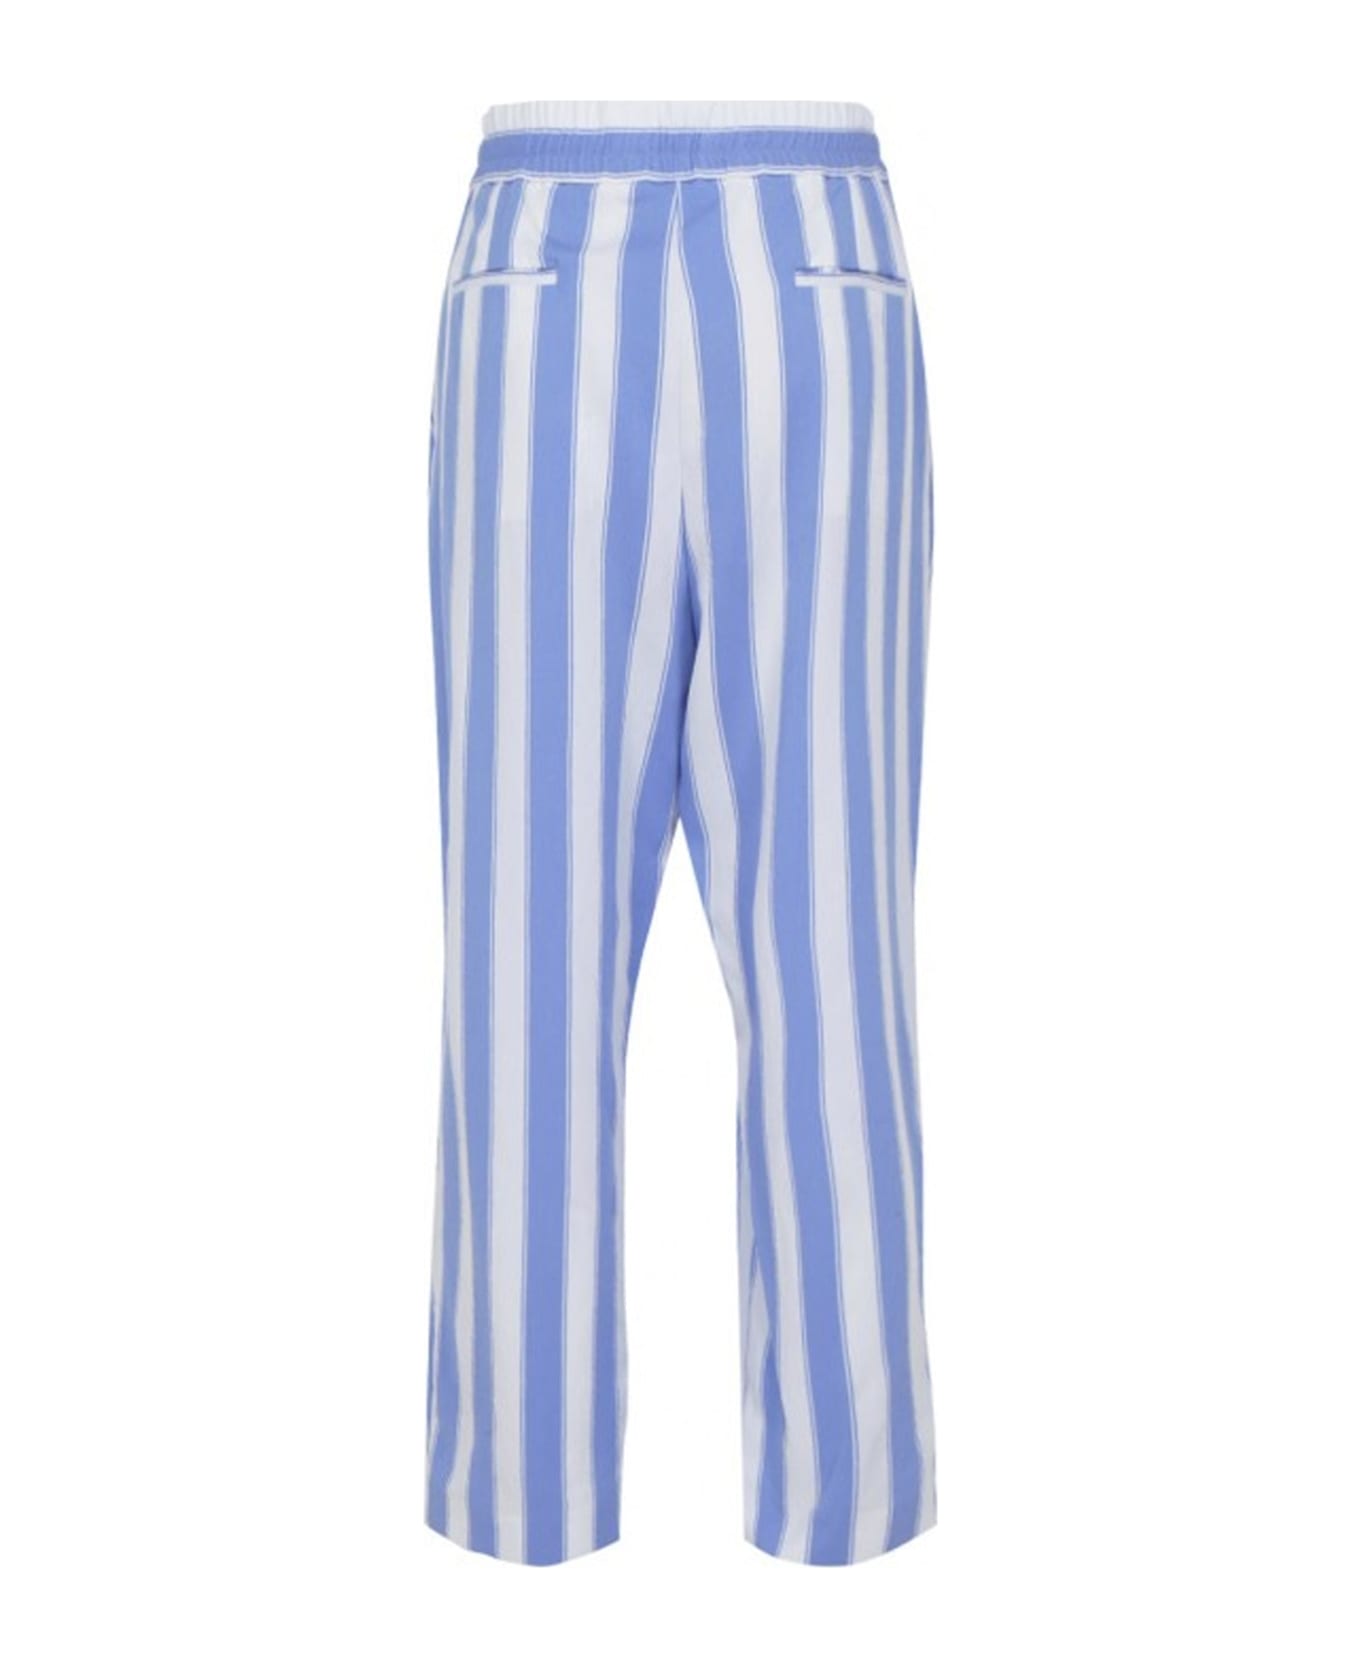 Balmain Striped Pants - Blue